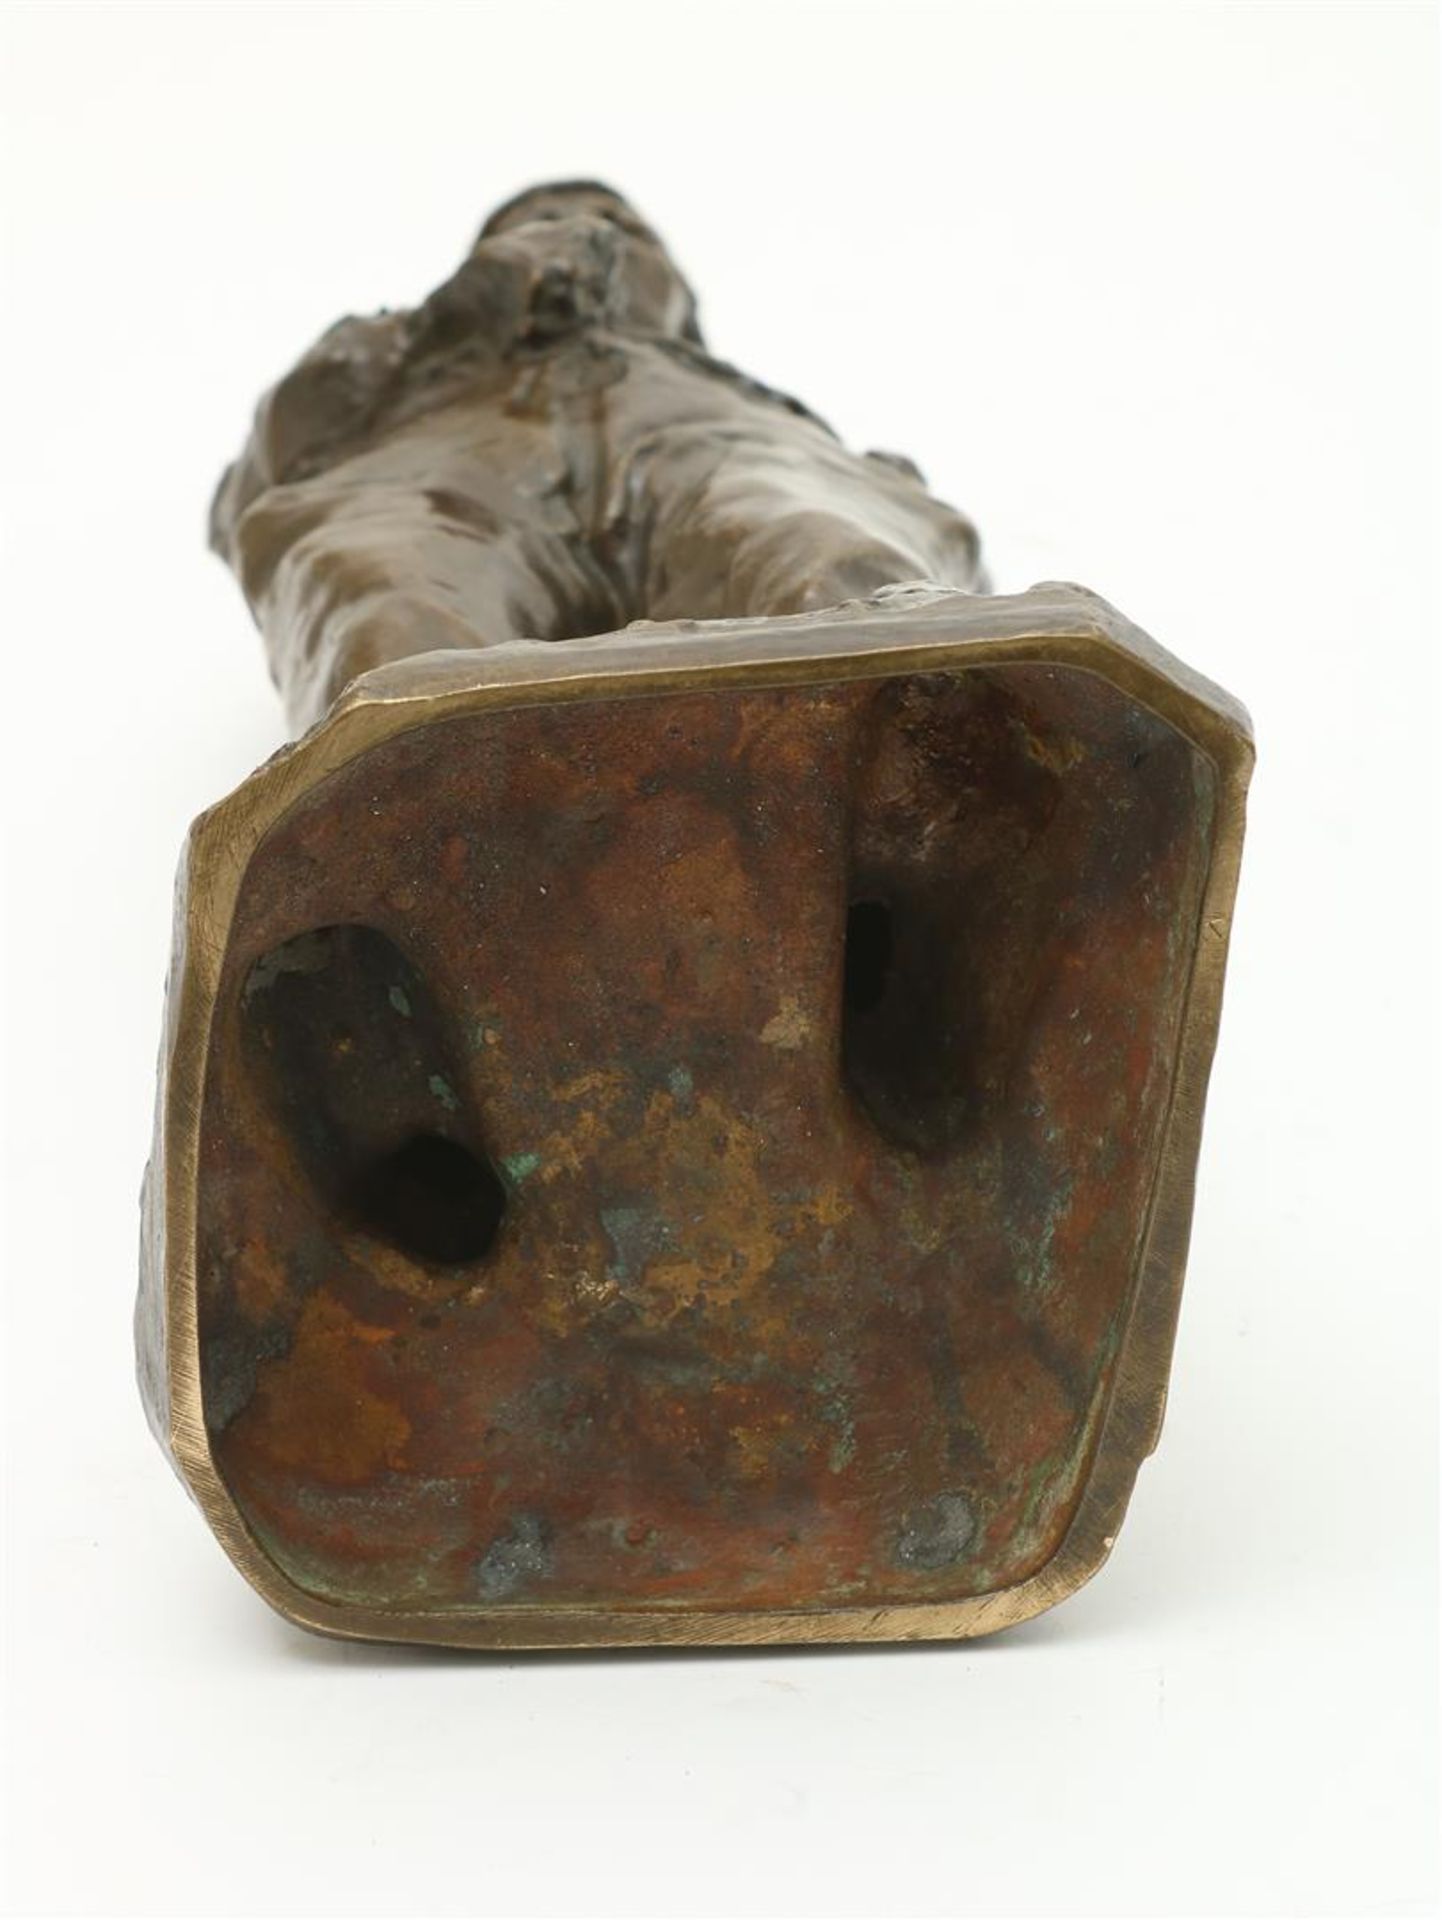 Wijk, "Charles" van. Bronze sculpture - Bild 6 aus 6